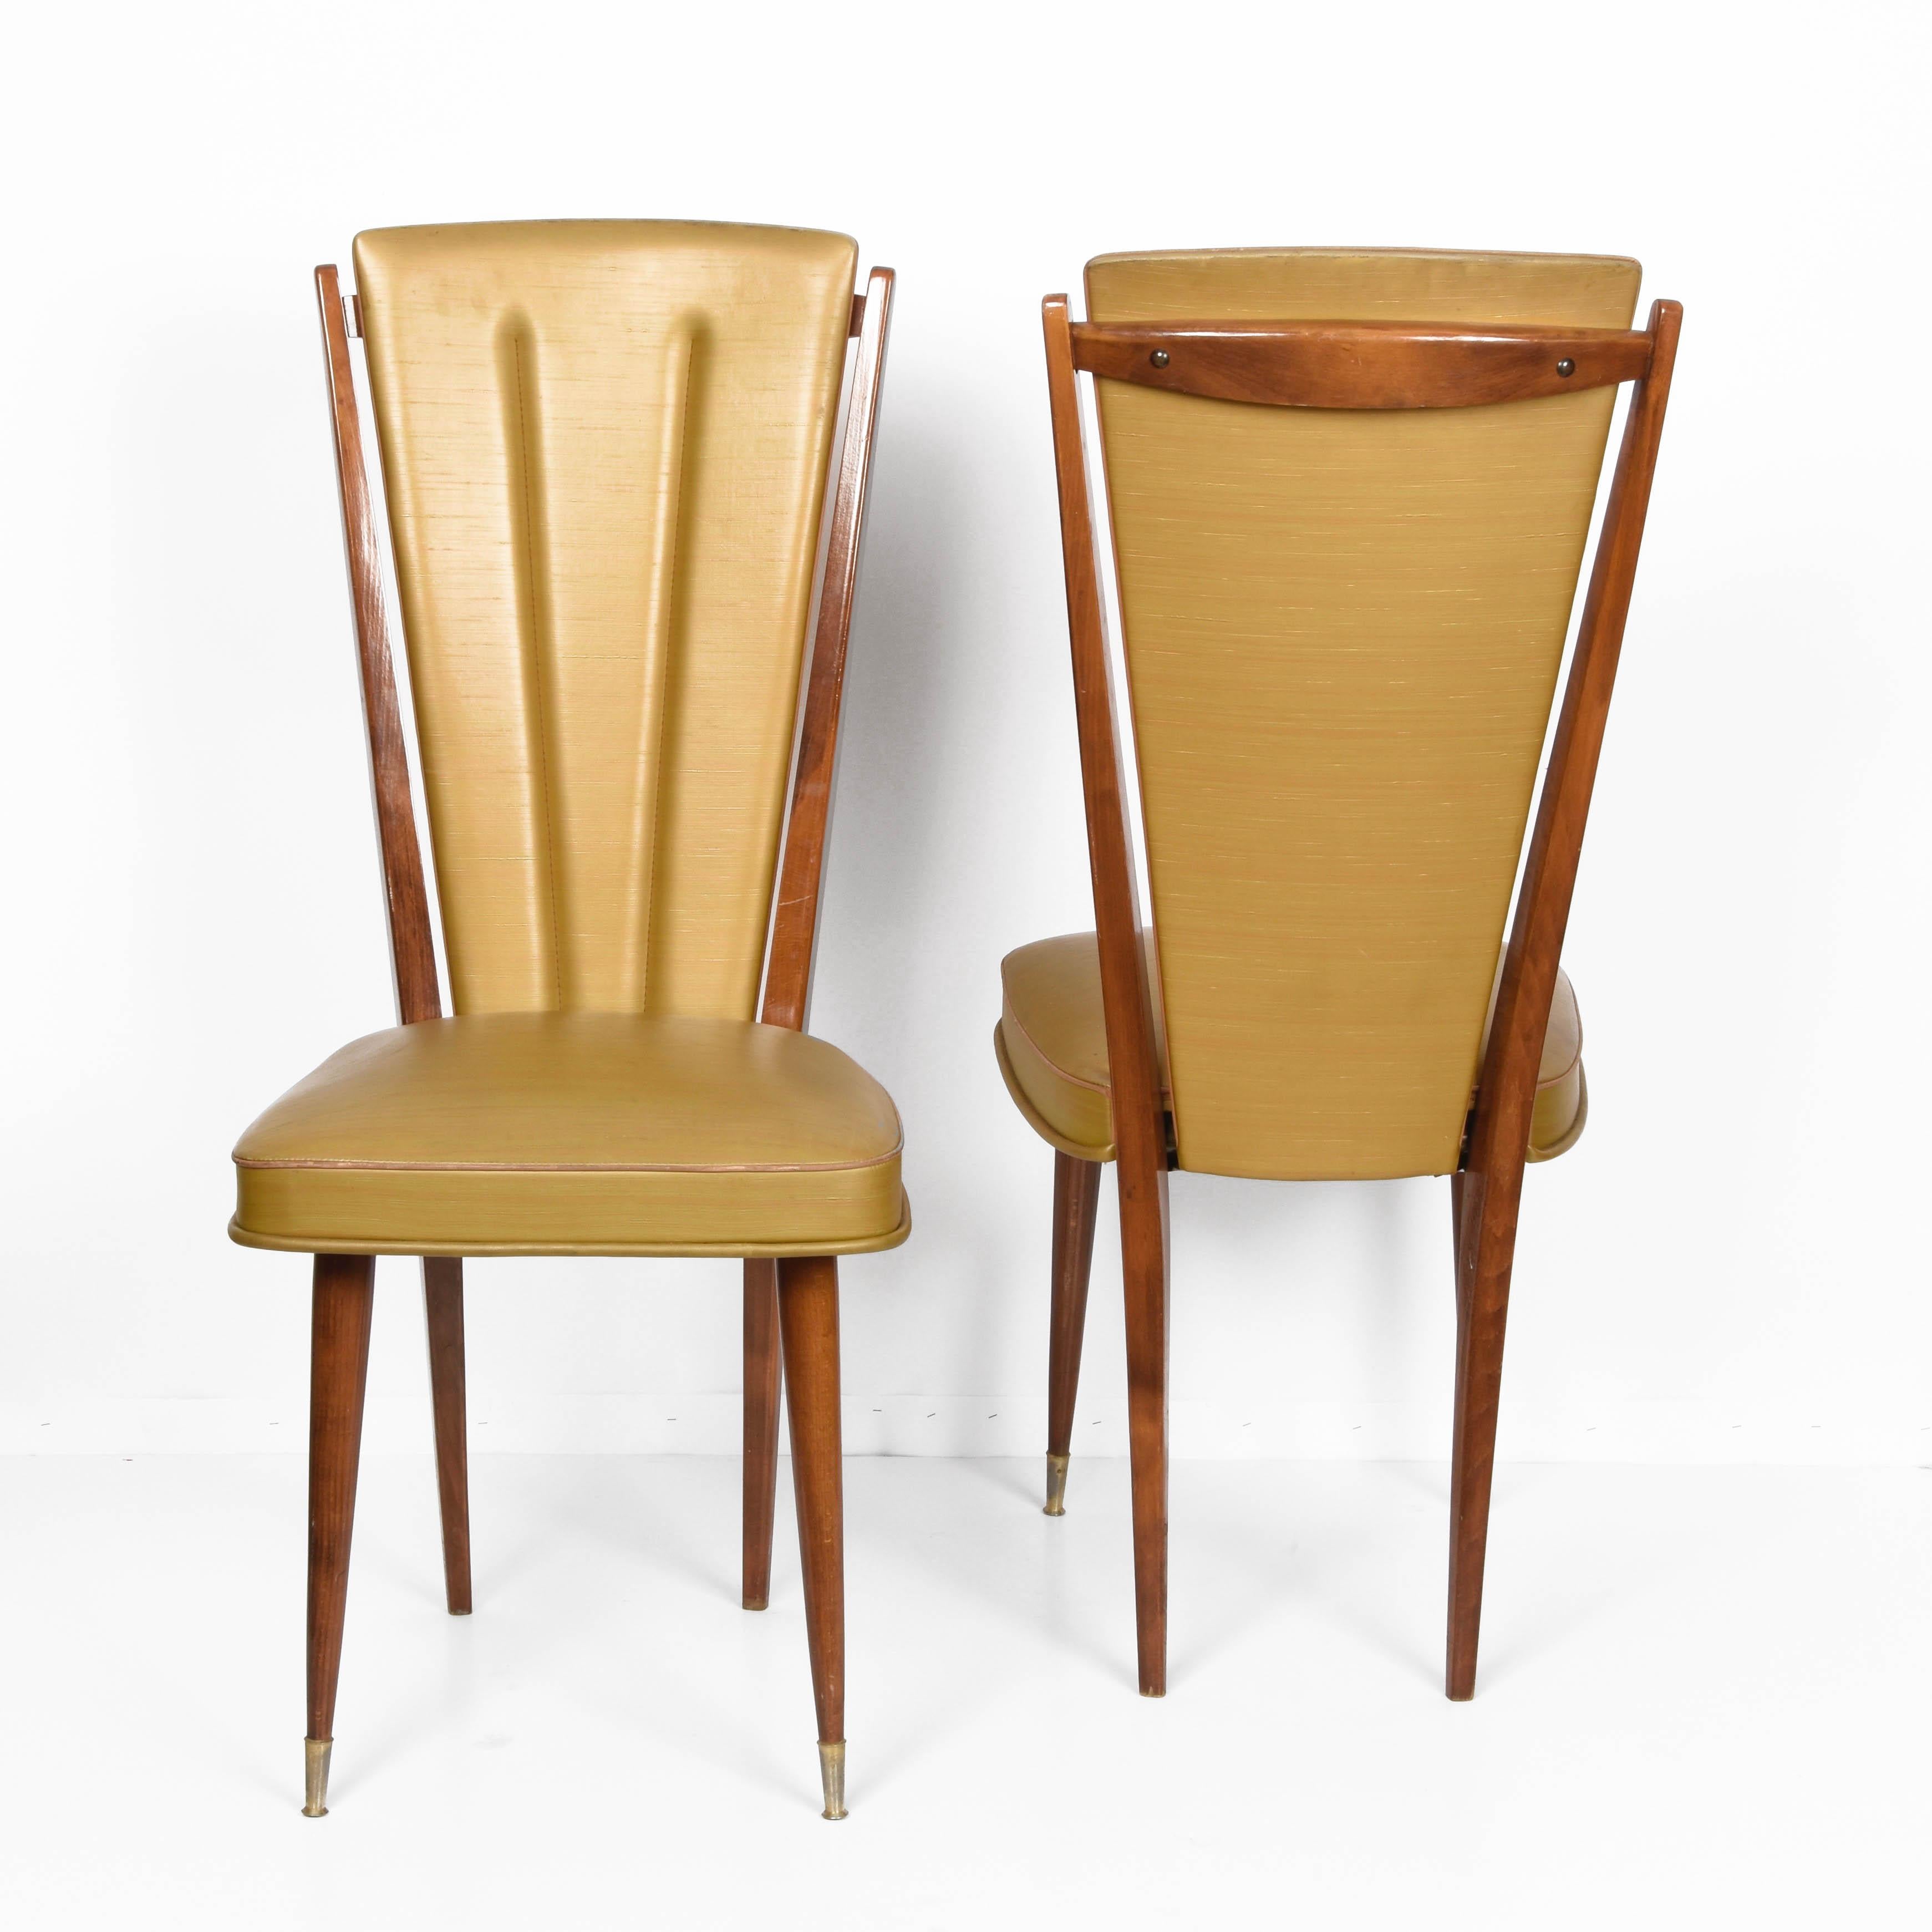 Superbe paire de chaises de salle à manger en hêtre et vinyle beige. Ces articles ont été produits en France dans les années 1950 par Ameublement NF siège 24.

Cet ensemble est un exemple majeur du midcentury français en raison de ses lignes, tant